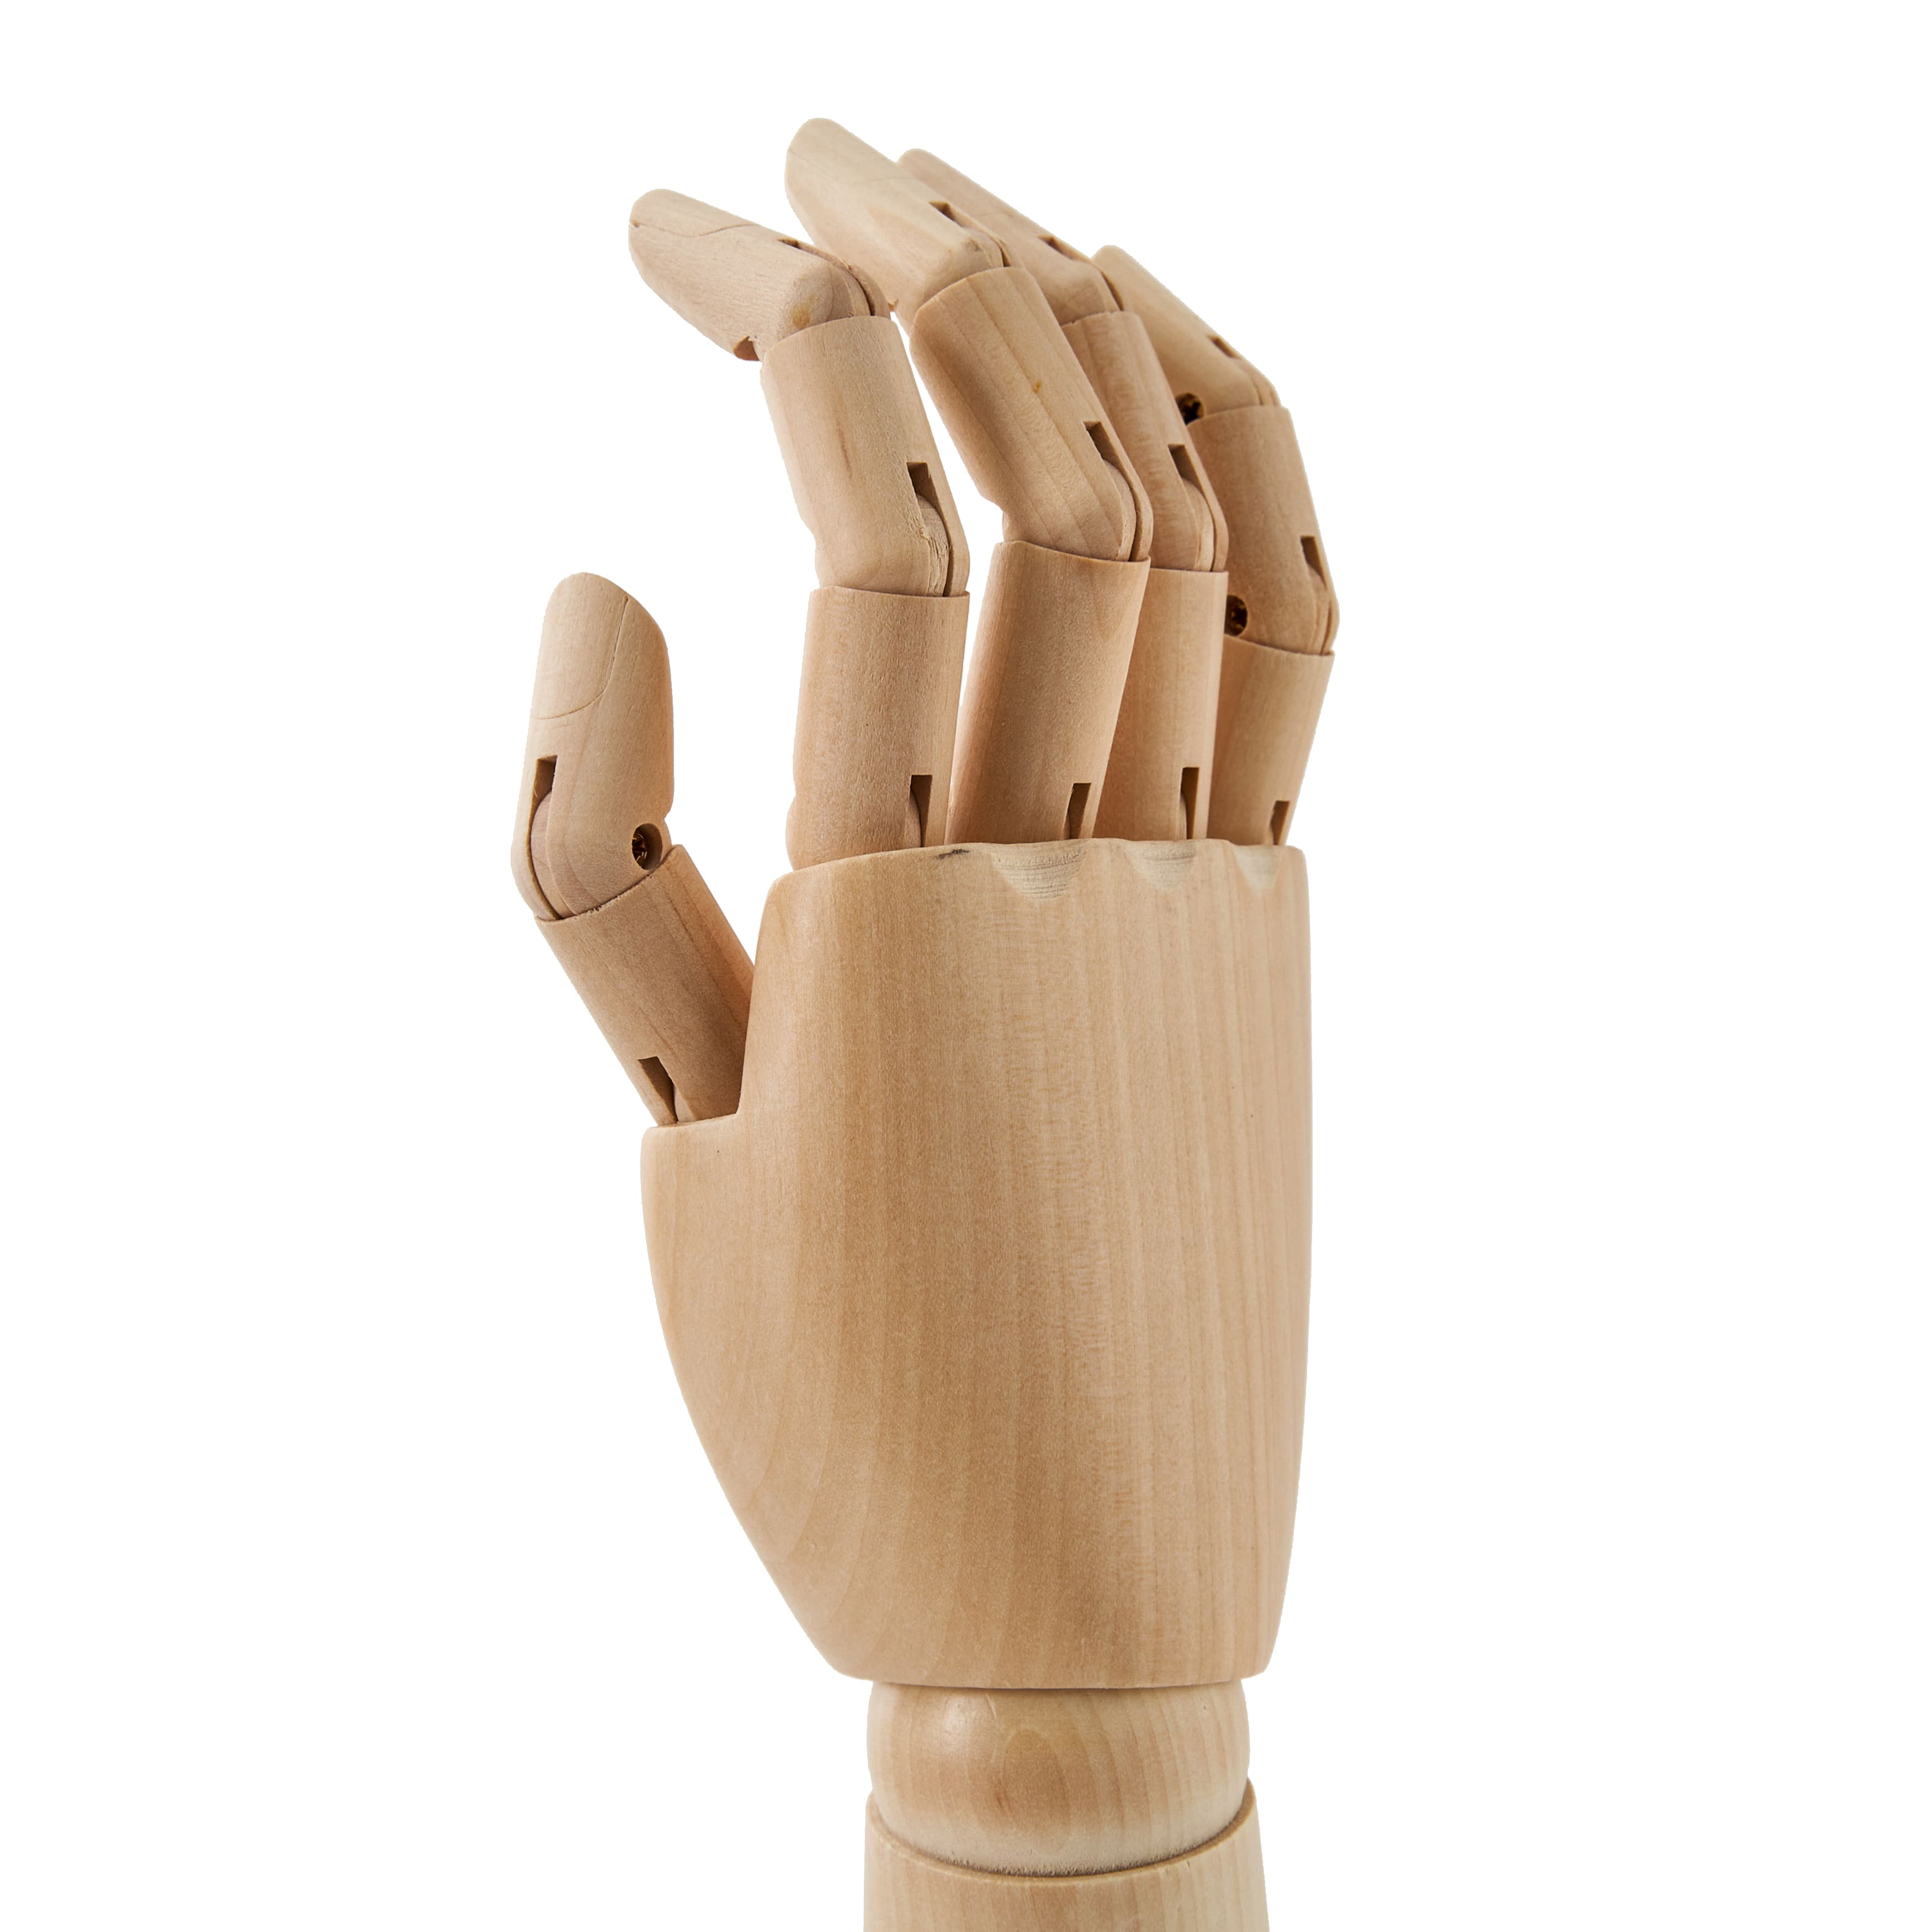 Manikin Wooden Hand Right Sml - Cork Art Supplies Ltd